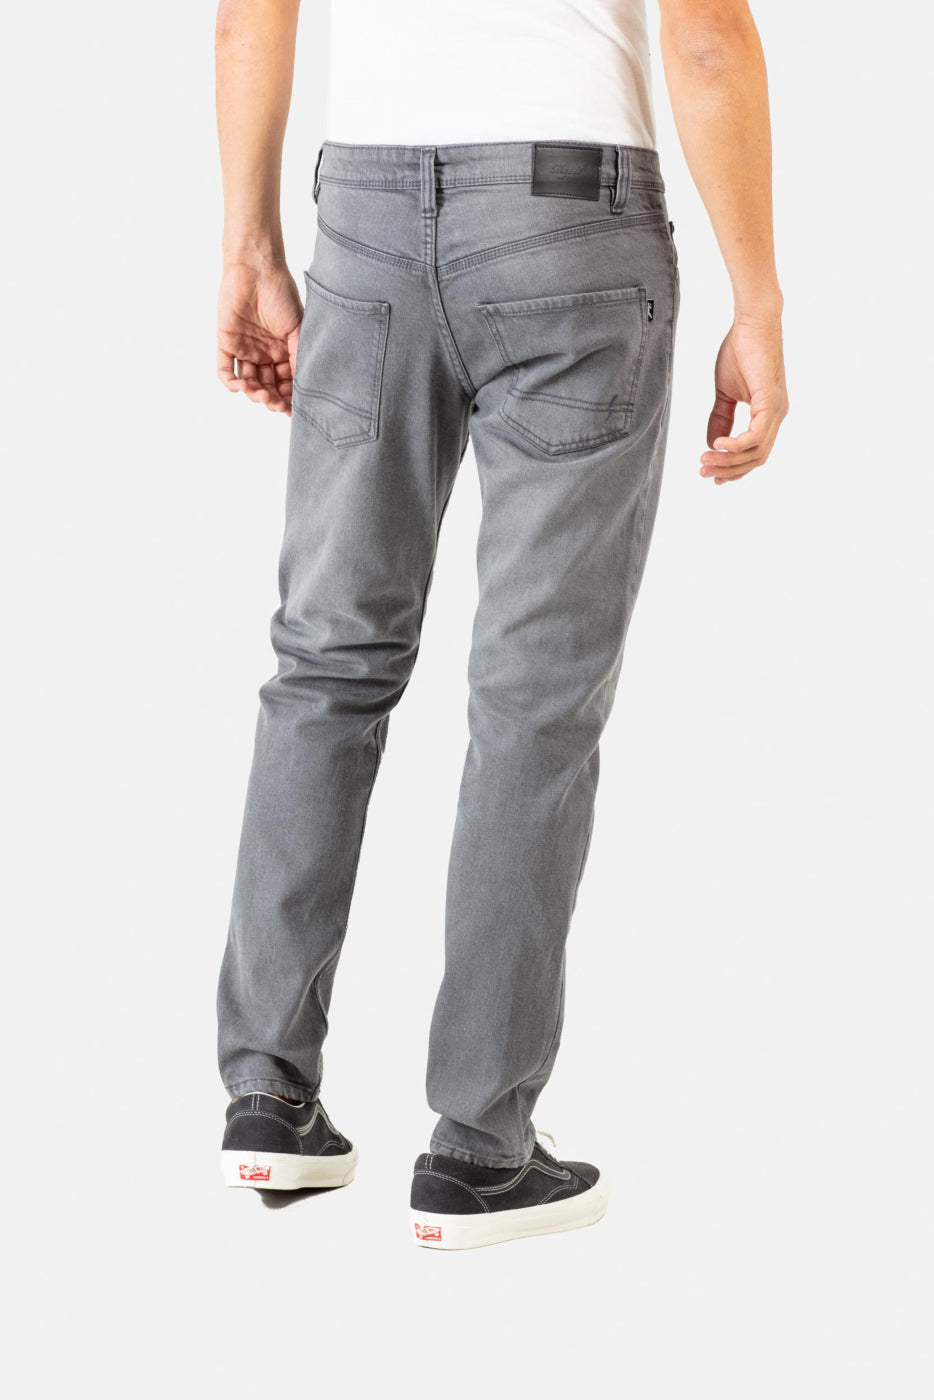 Reell Nova 2 Jeans - Grey